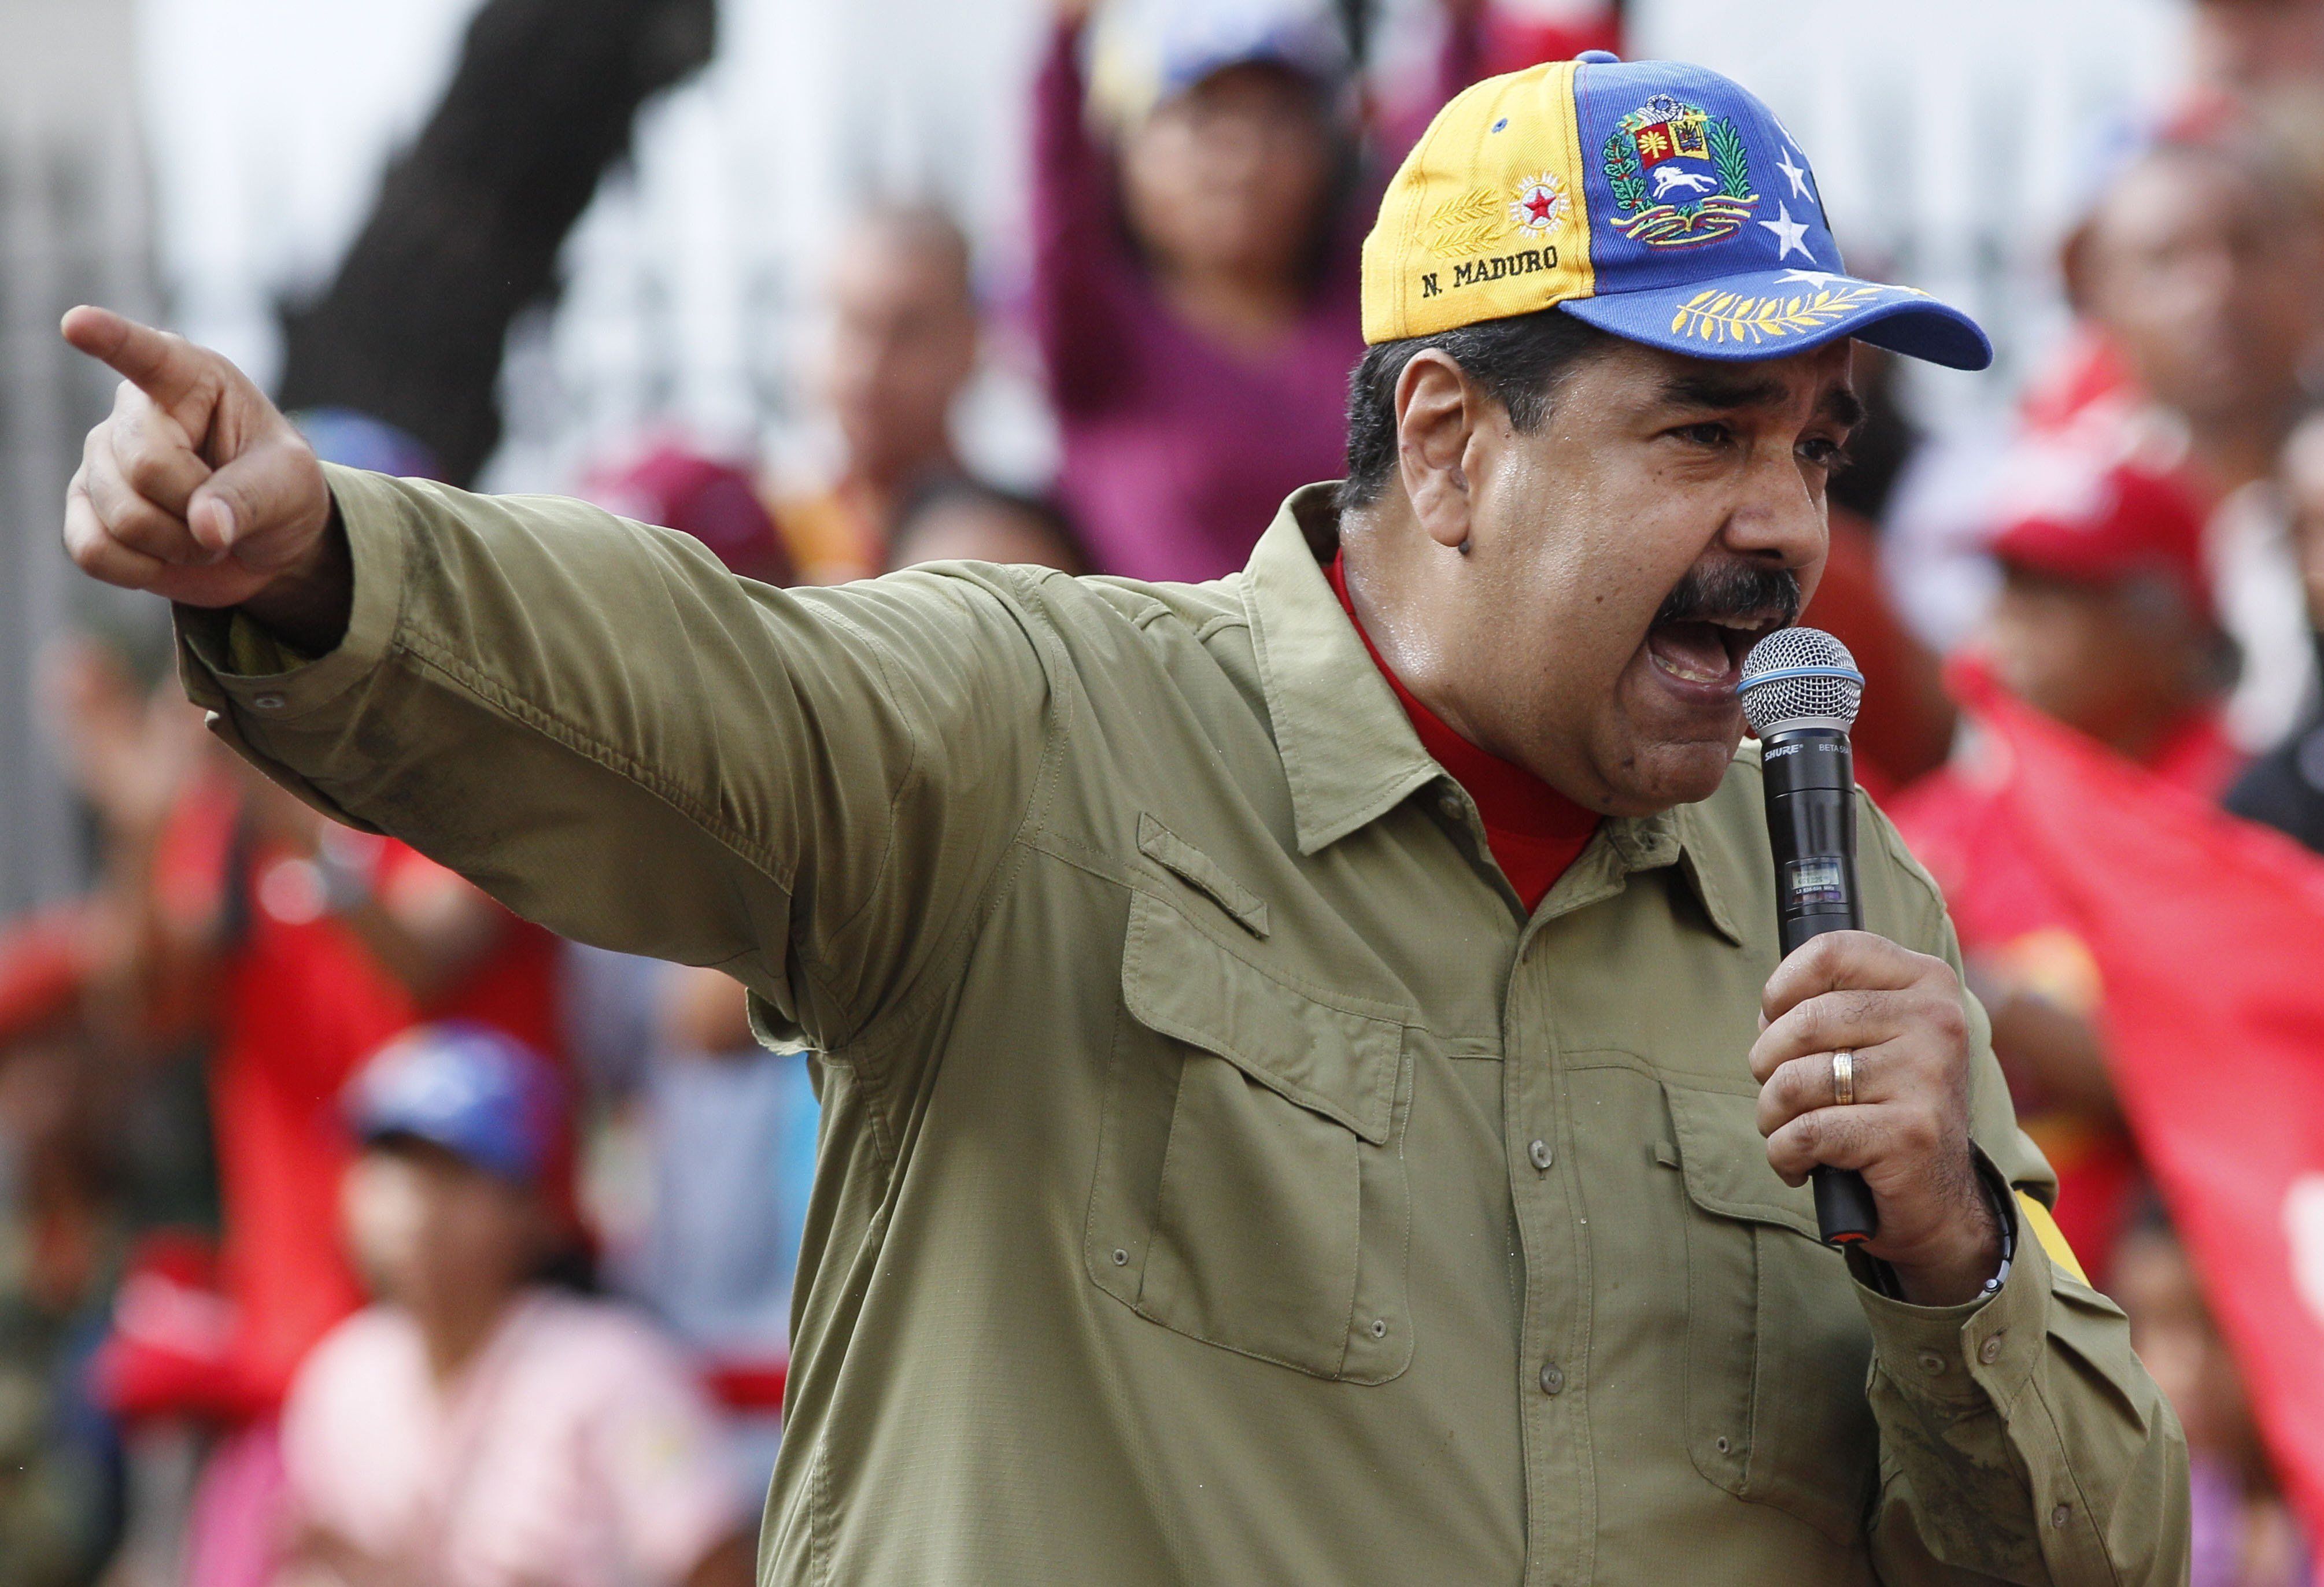 Nicolás Maduro venezuelai elnök beszédet mond támogatói előtt Caracasban 2018. február 4-én, a hivatali elődje, Hugo Chávez Chávez által 1992-ben Carlos Andrés Pérez elnök ellen végrehajtott sikertelen puccskísérlet 26. évfordulója alkalmából tartott ünnepségen. (MTI/AP/Ariana Cubillos)